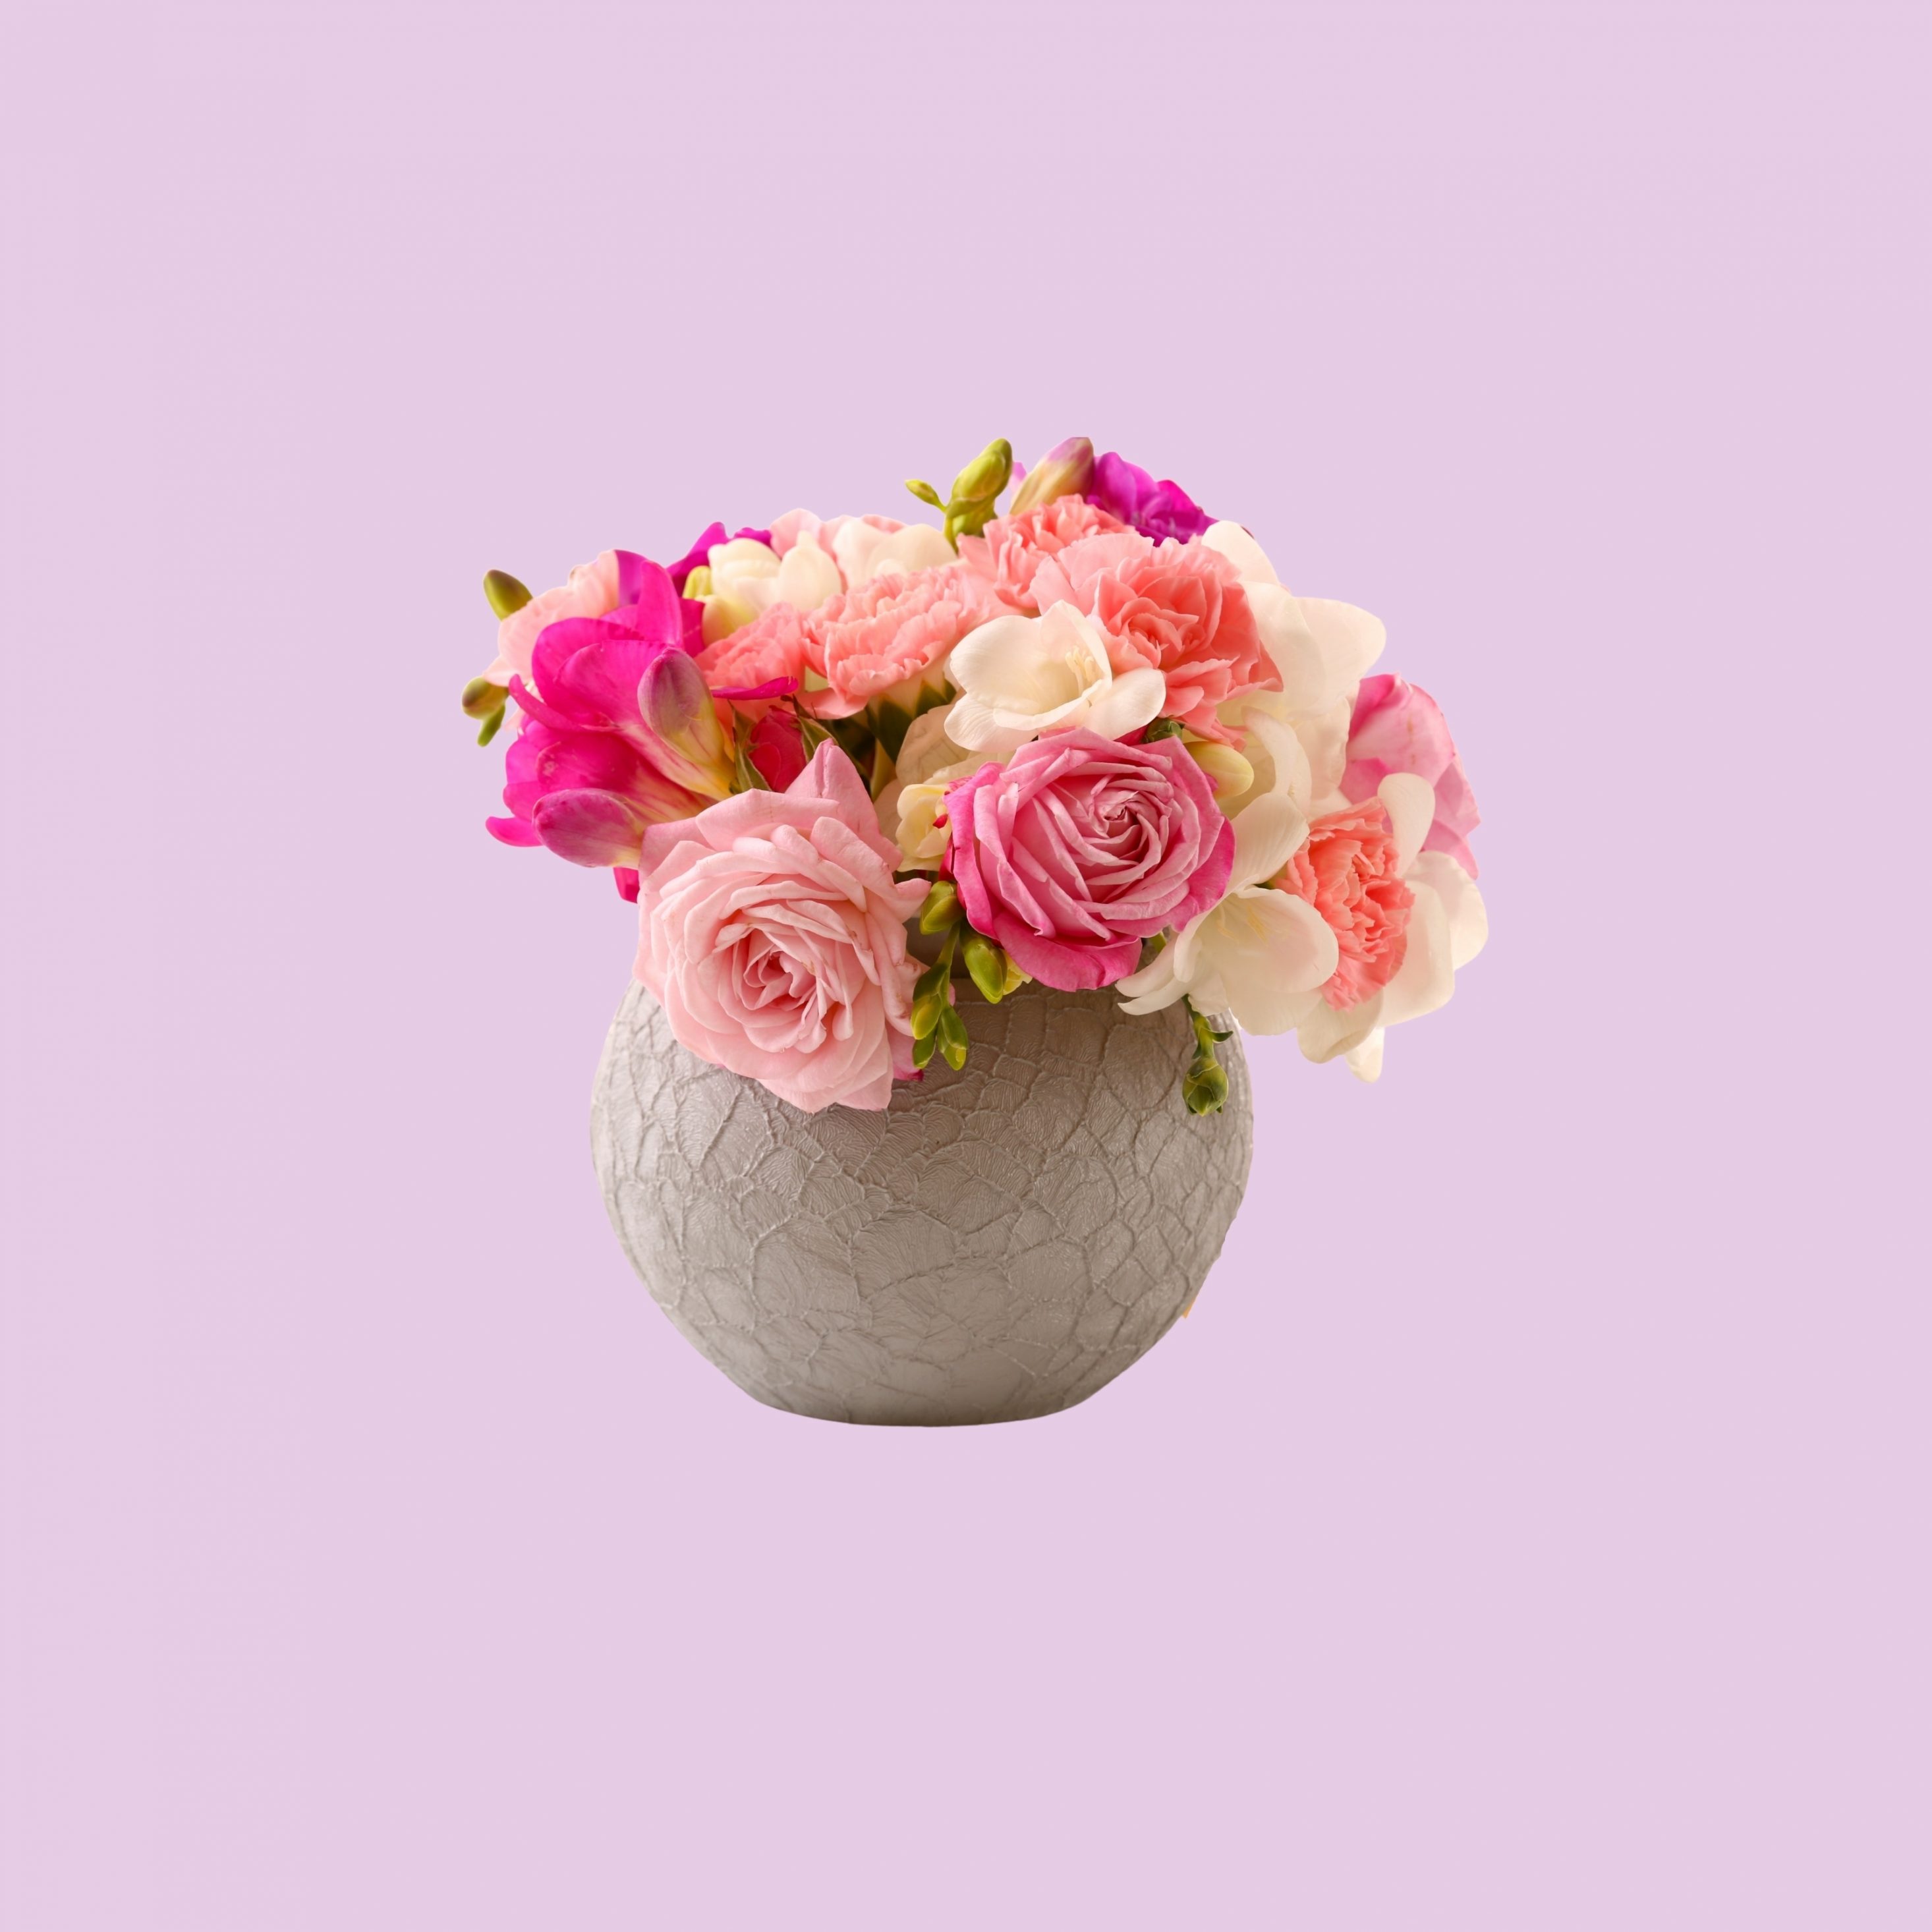 2932x2932 iPad Pro wallpaper 4k Vase Pink Roses Floral Pot iPad Wallpaper 2932x2932 pixels resolution